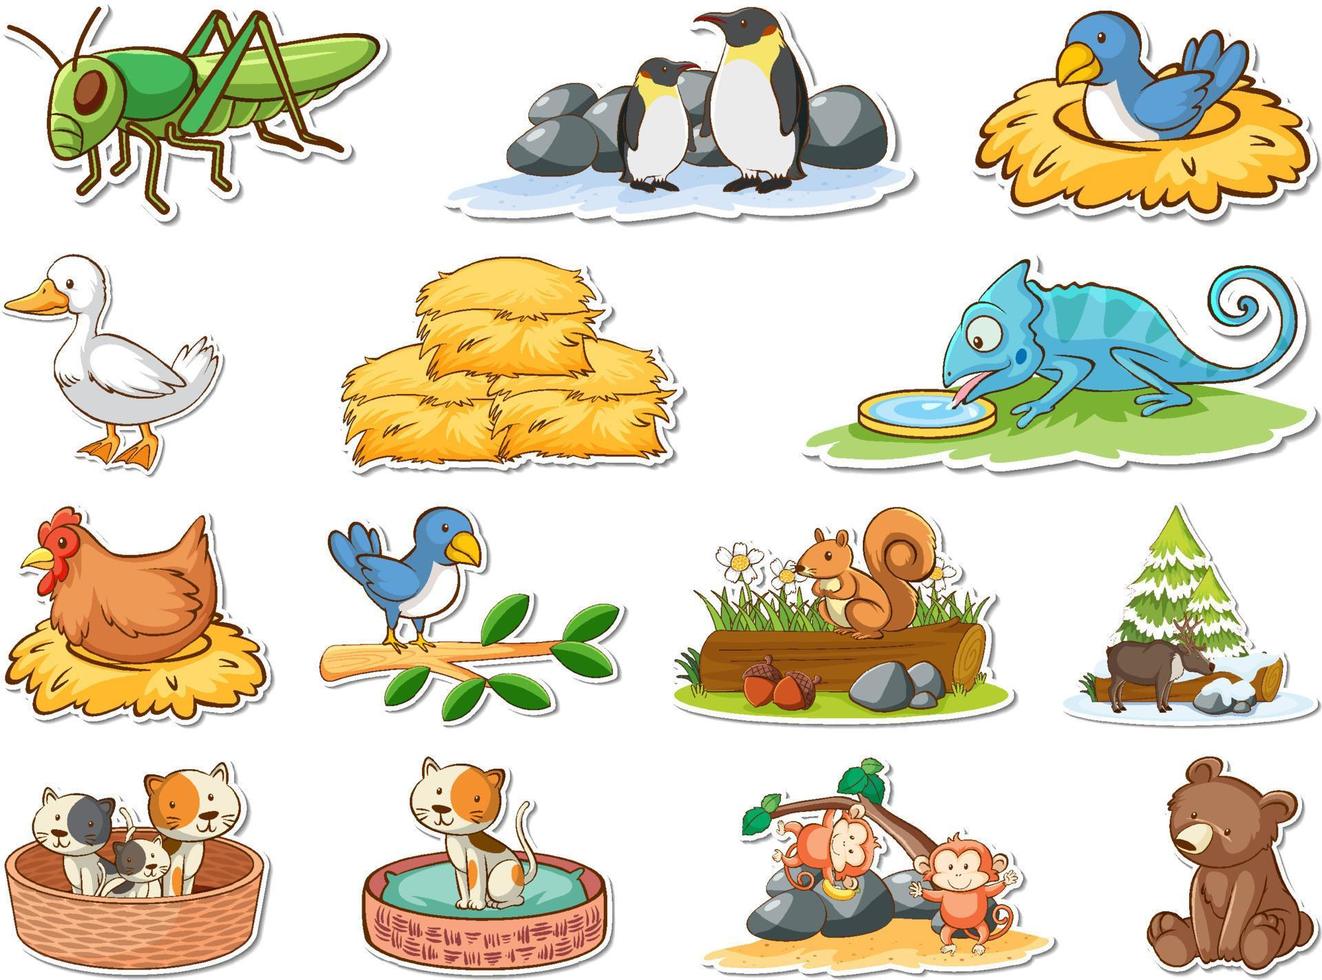 conjunto de adesivos de animais selvagens de desenho animado vetor